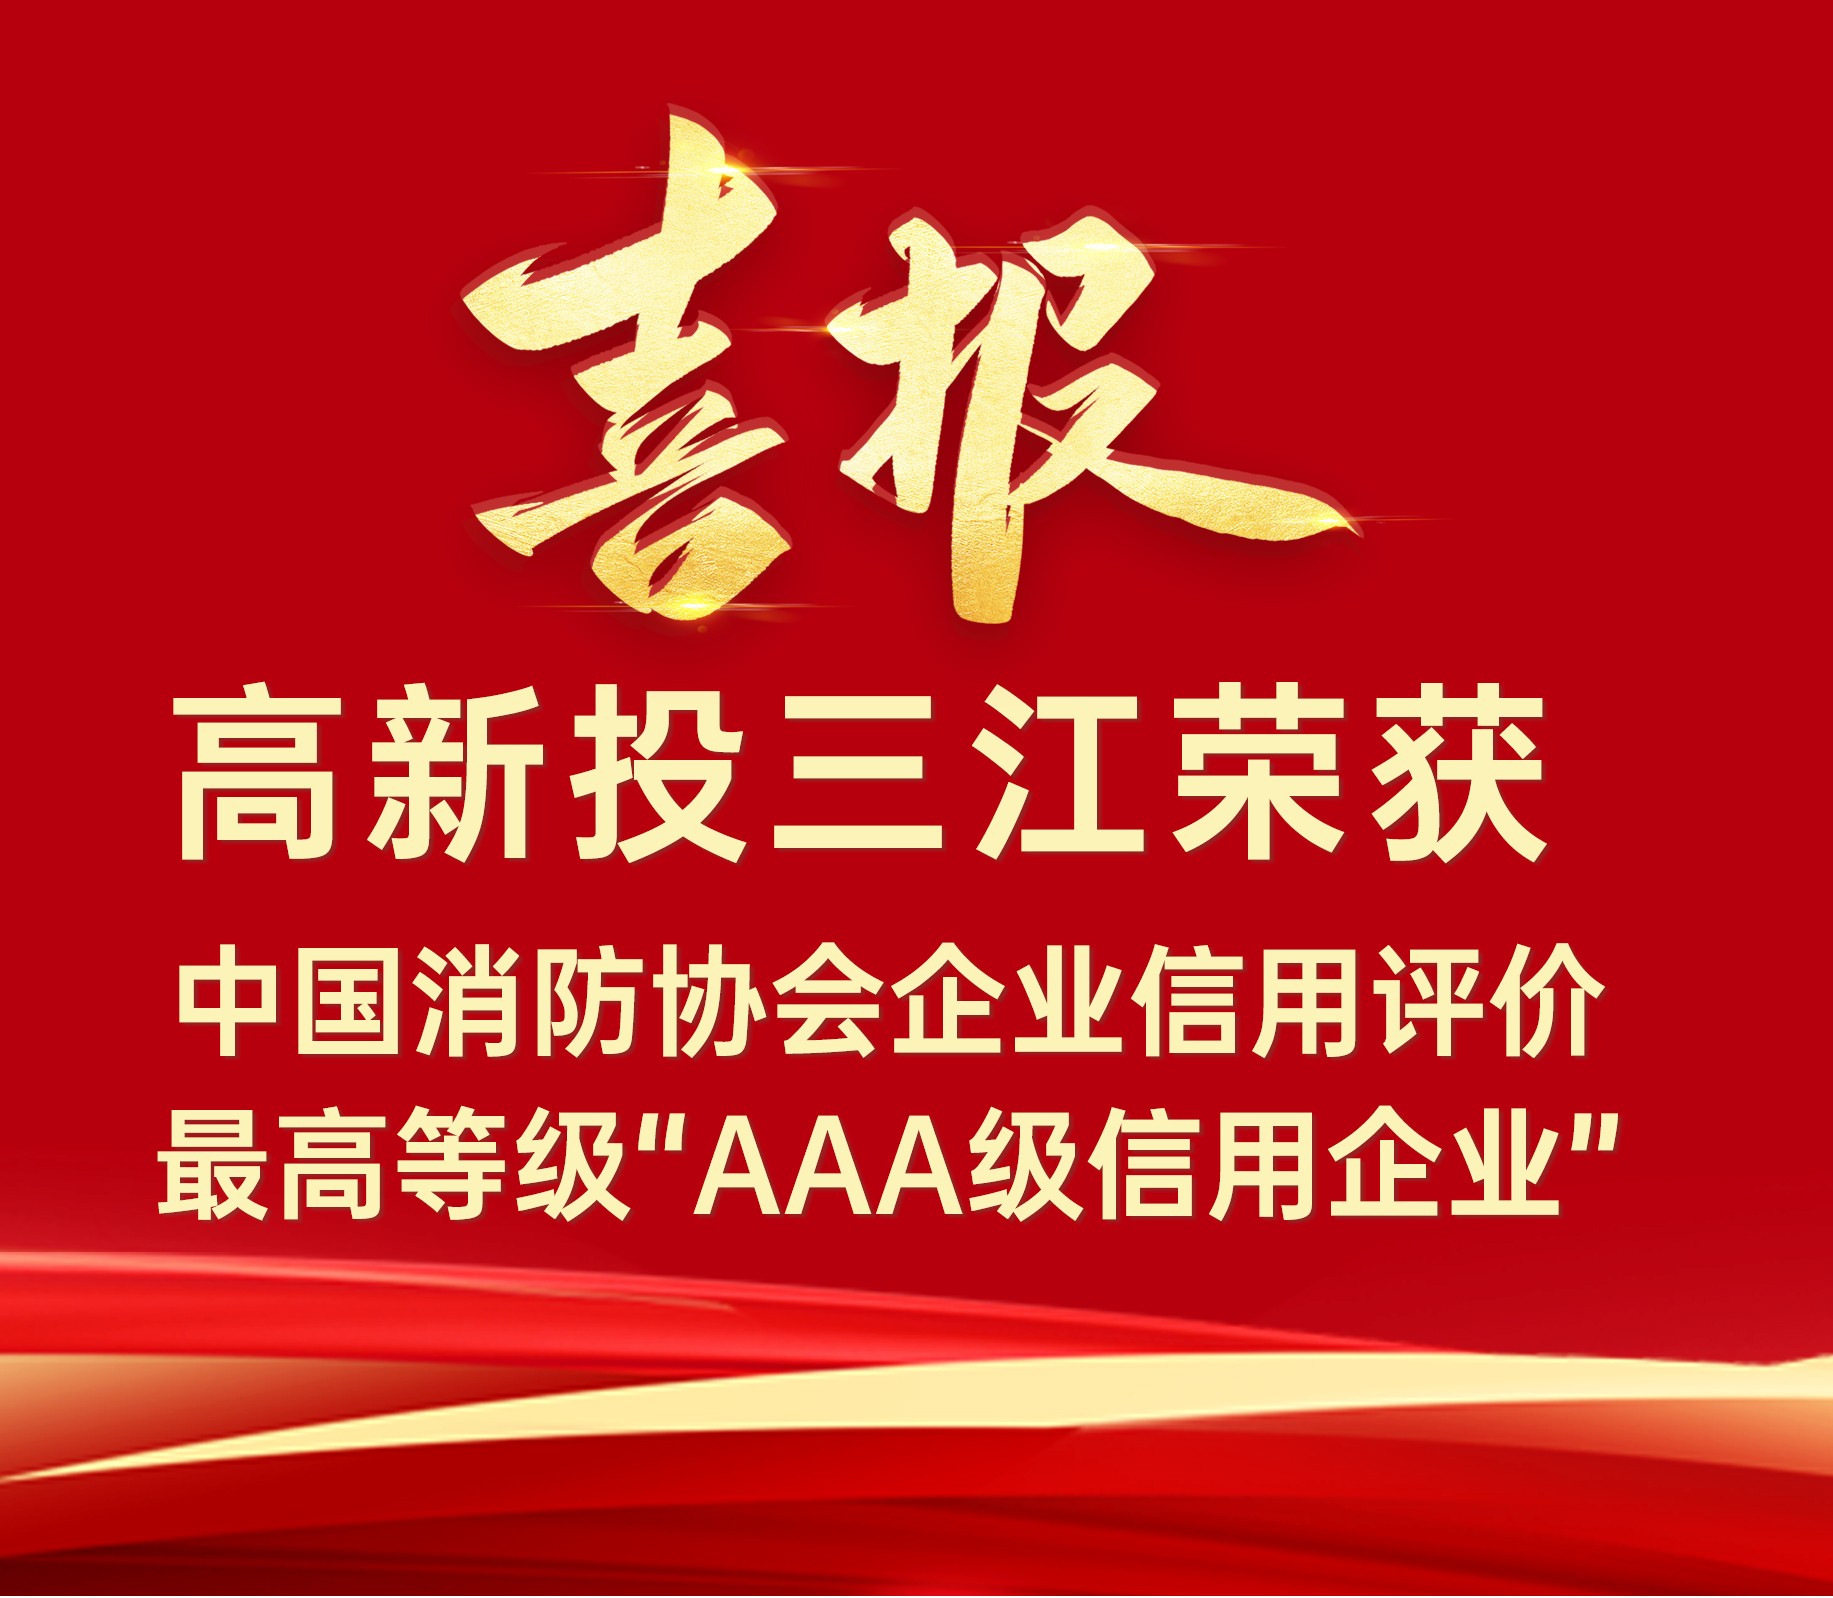 bwin必赢唯一官方网站连续荣获中国消防协会企业信用评价最高等级“AAA级信用企业”